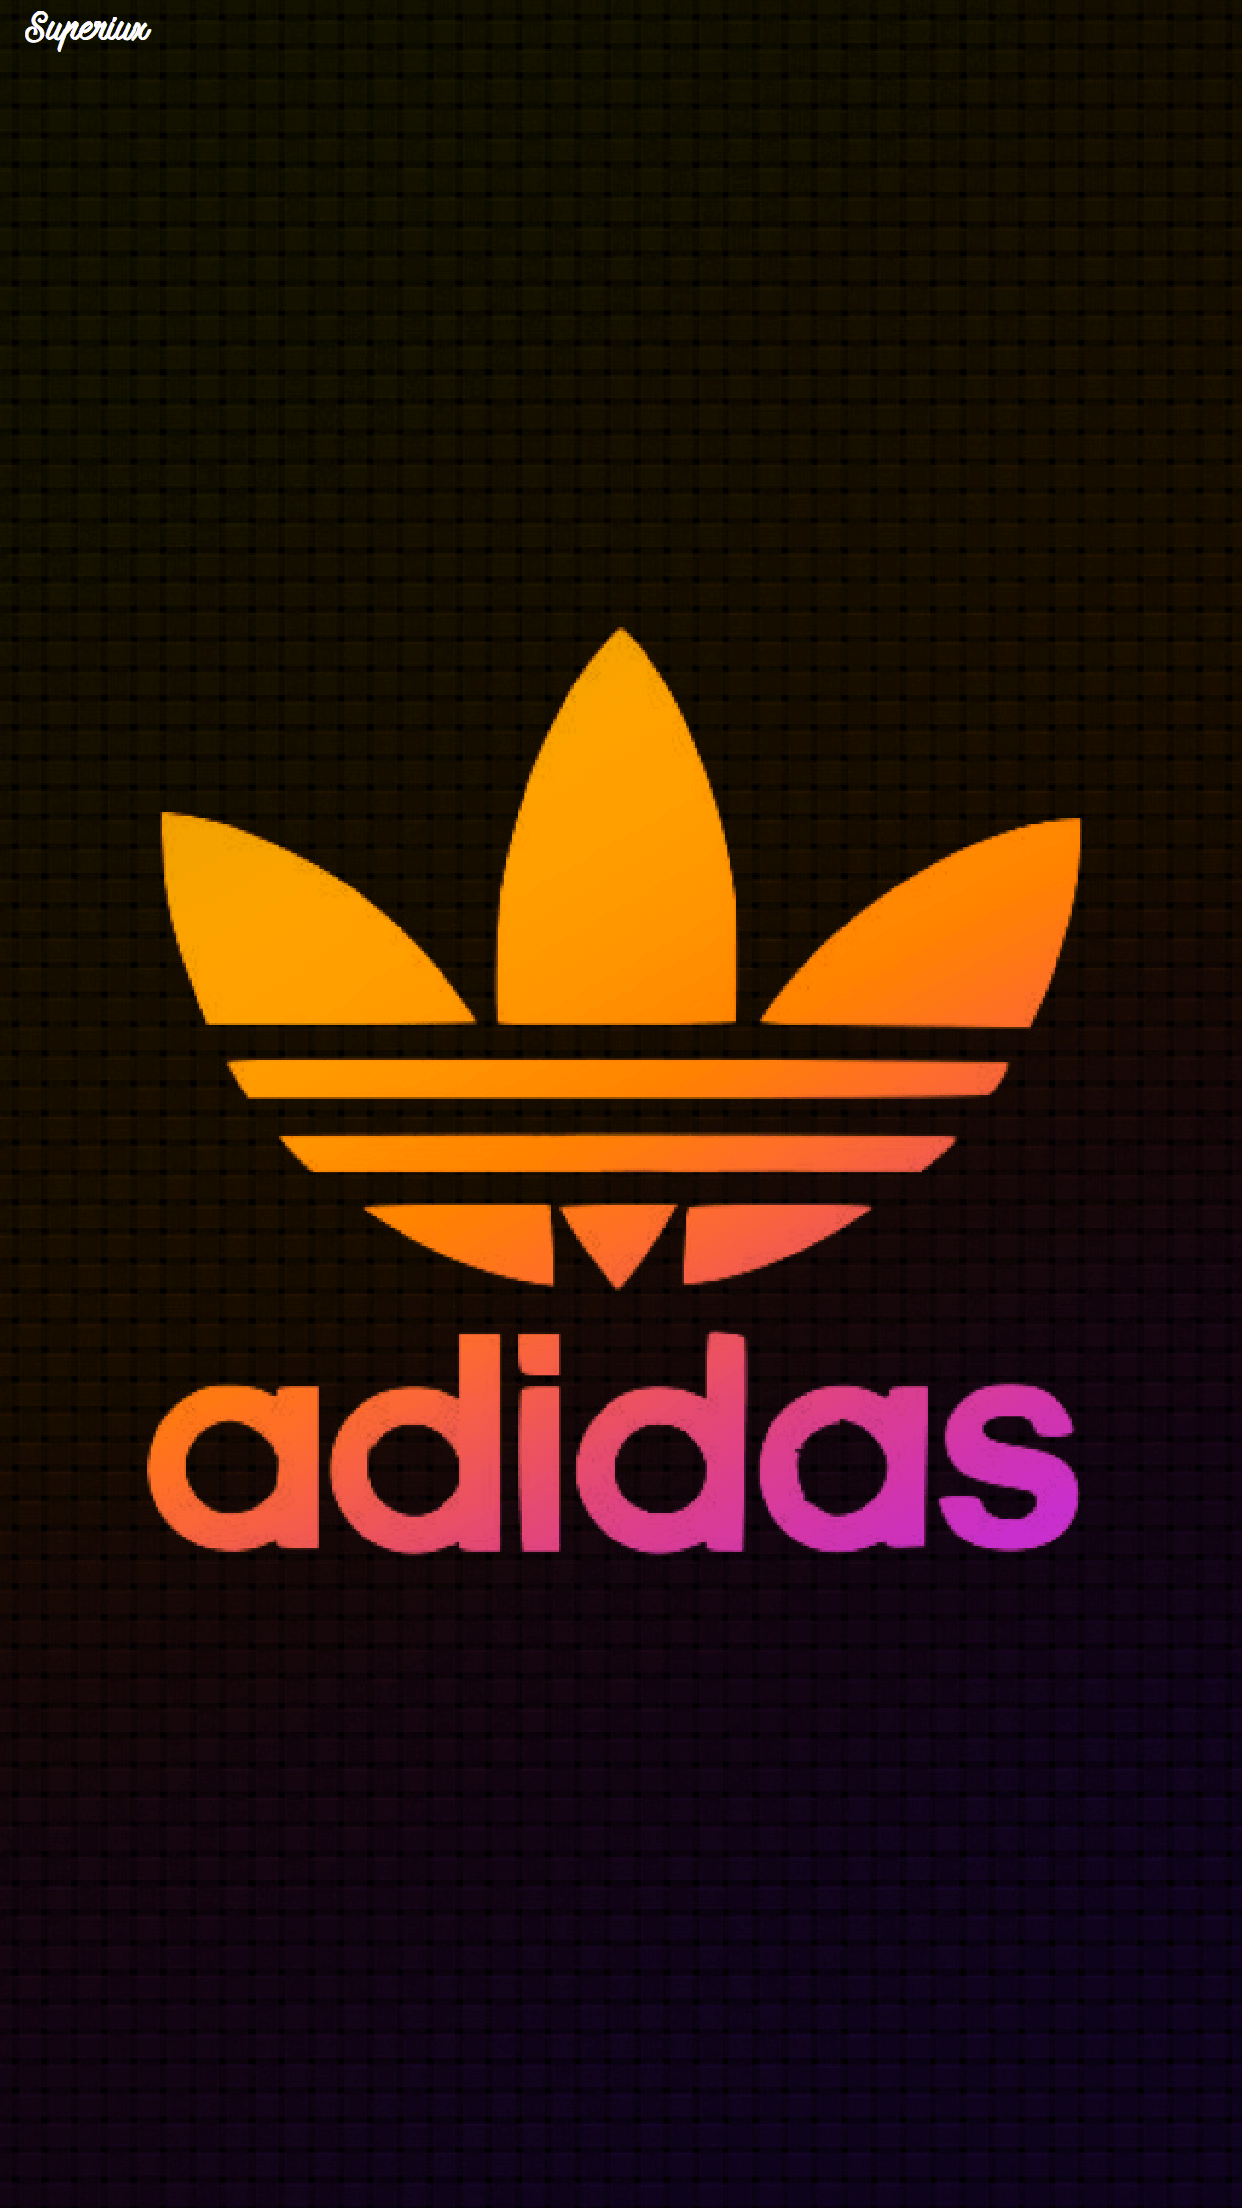 Orange Adidas Logo - Adidas Wallpaper Logo. Adidas wallpaper. Wallpaper, Logos